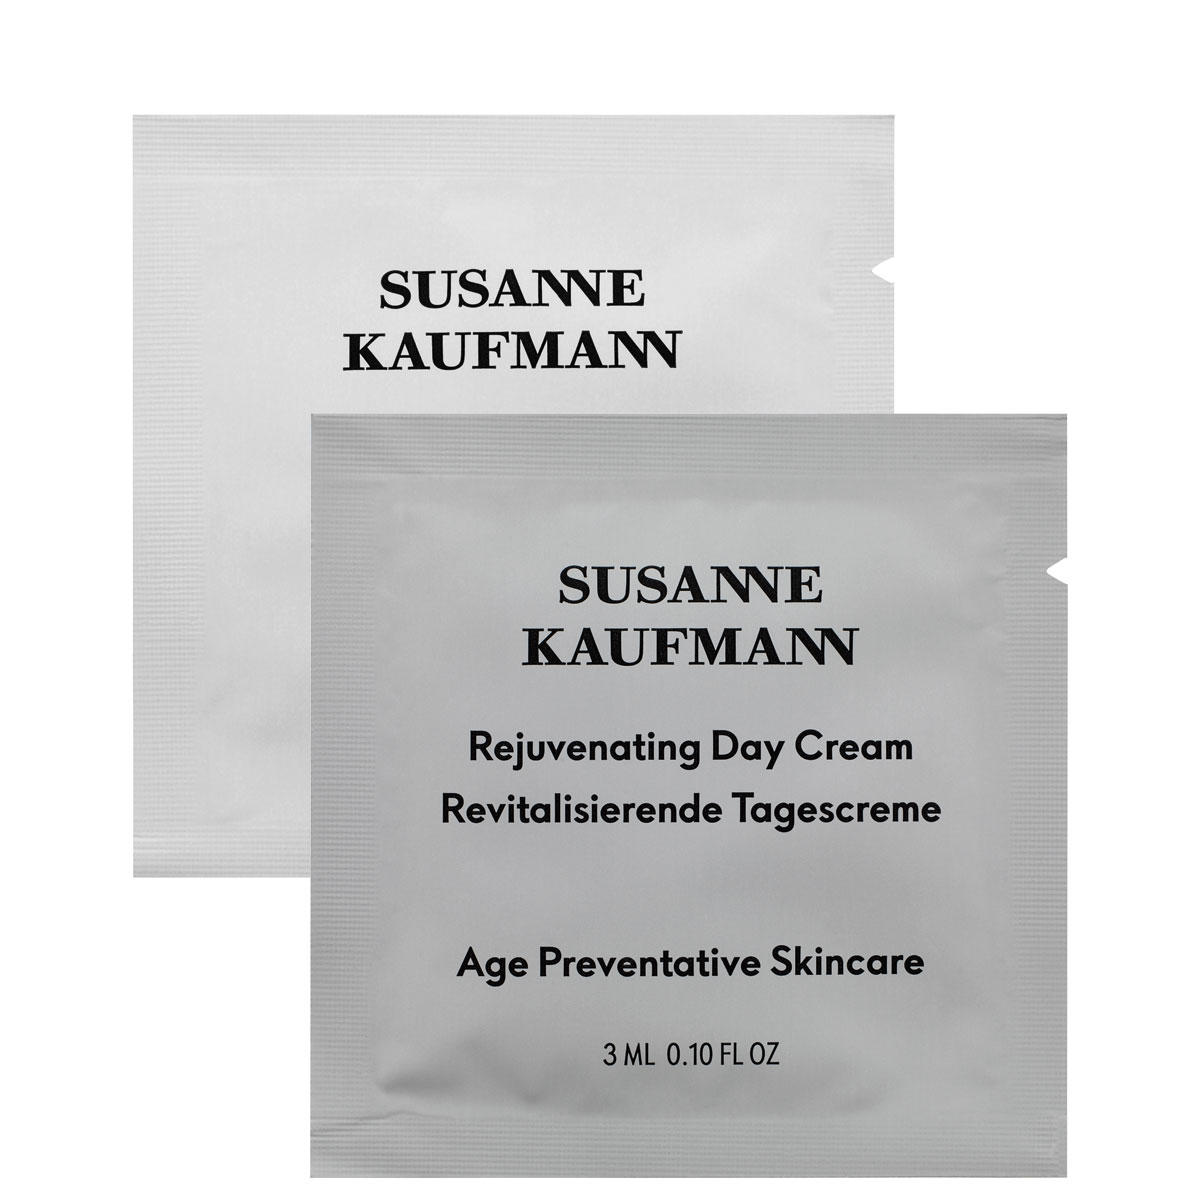 Susanne Kaufmann Tagescreme 3 ml sortiert, ein Sample